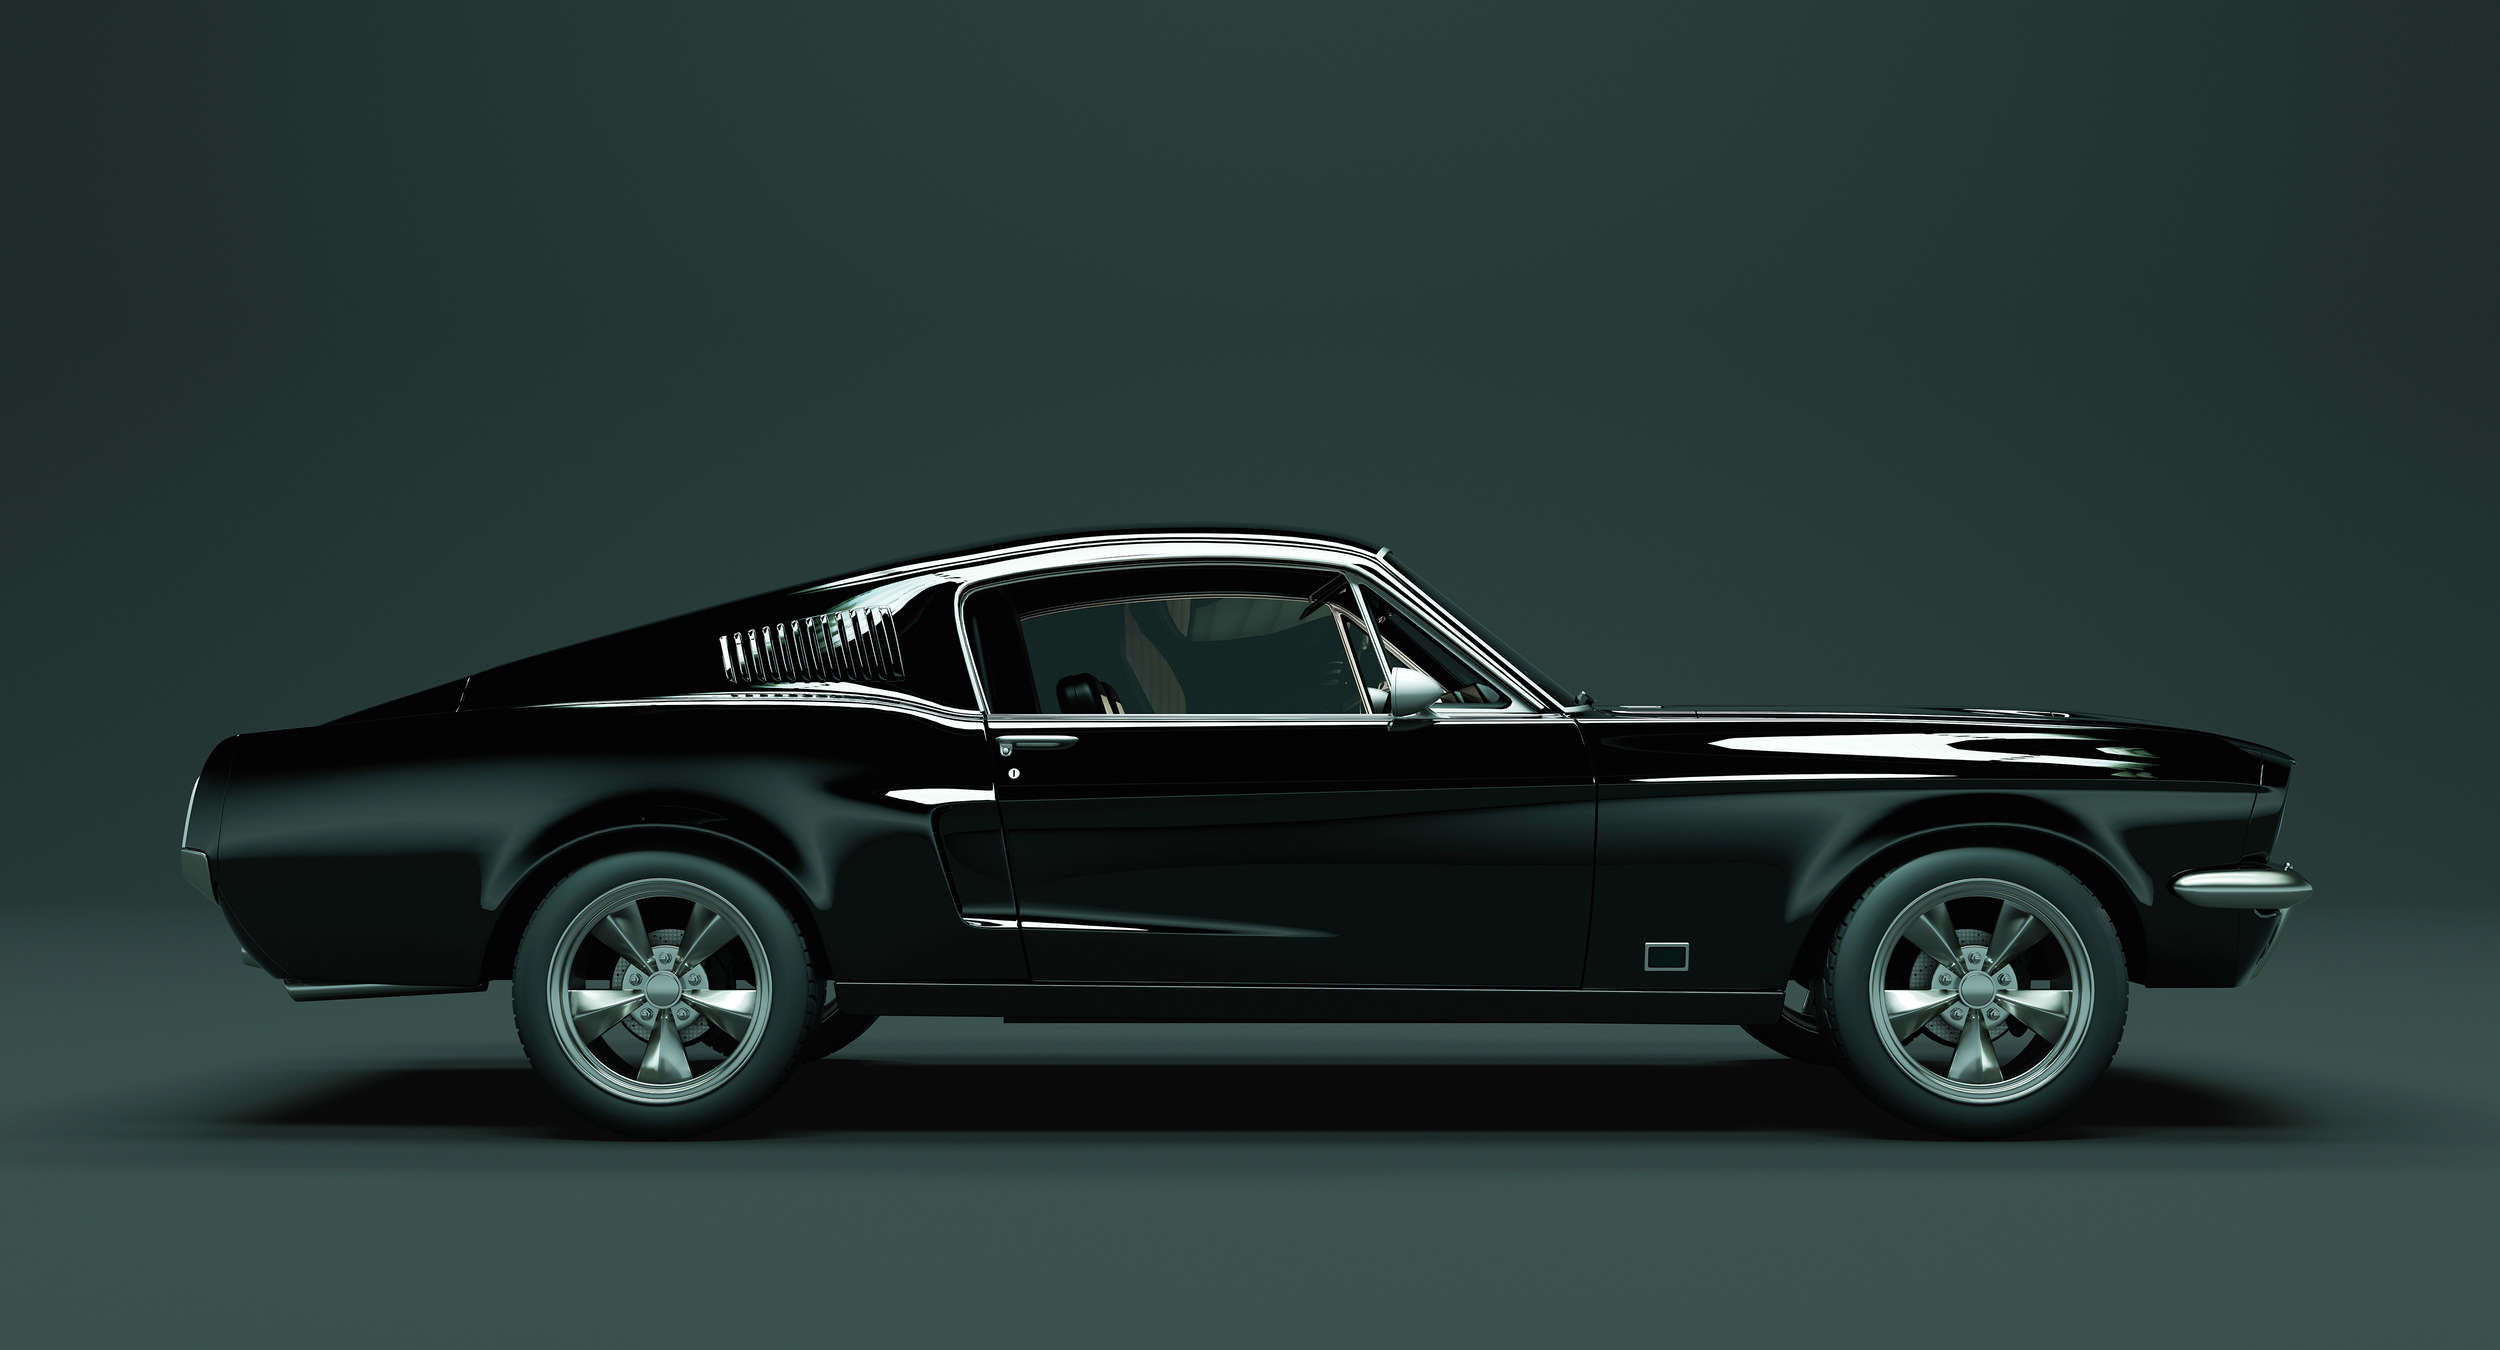             Mustang 1 - papier peint, vue latérale Mustang, vintage - bleu, noir | Intissé lisse mat
        